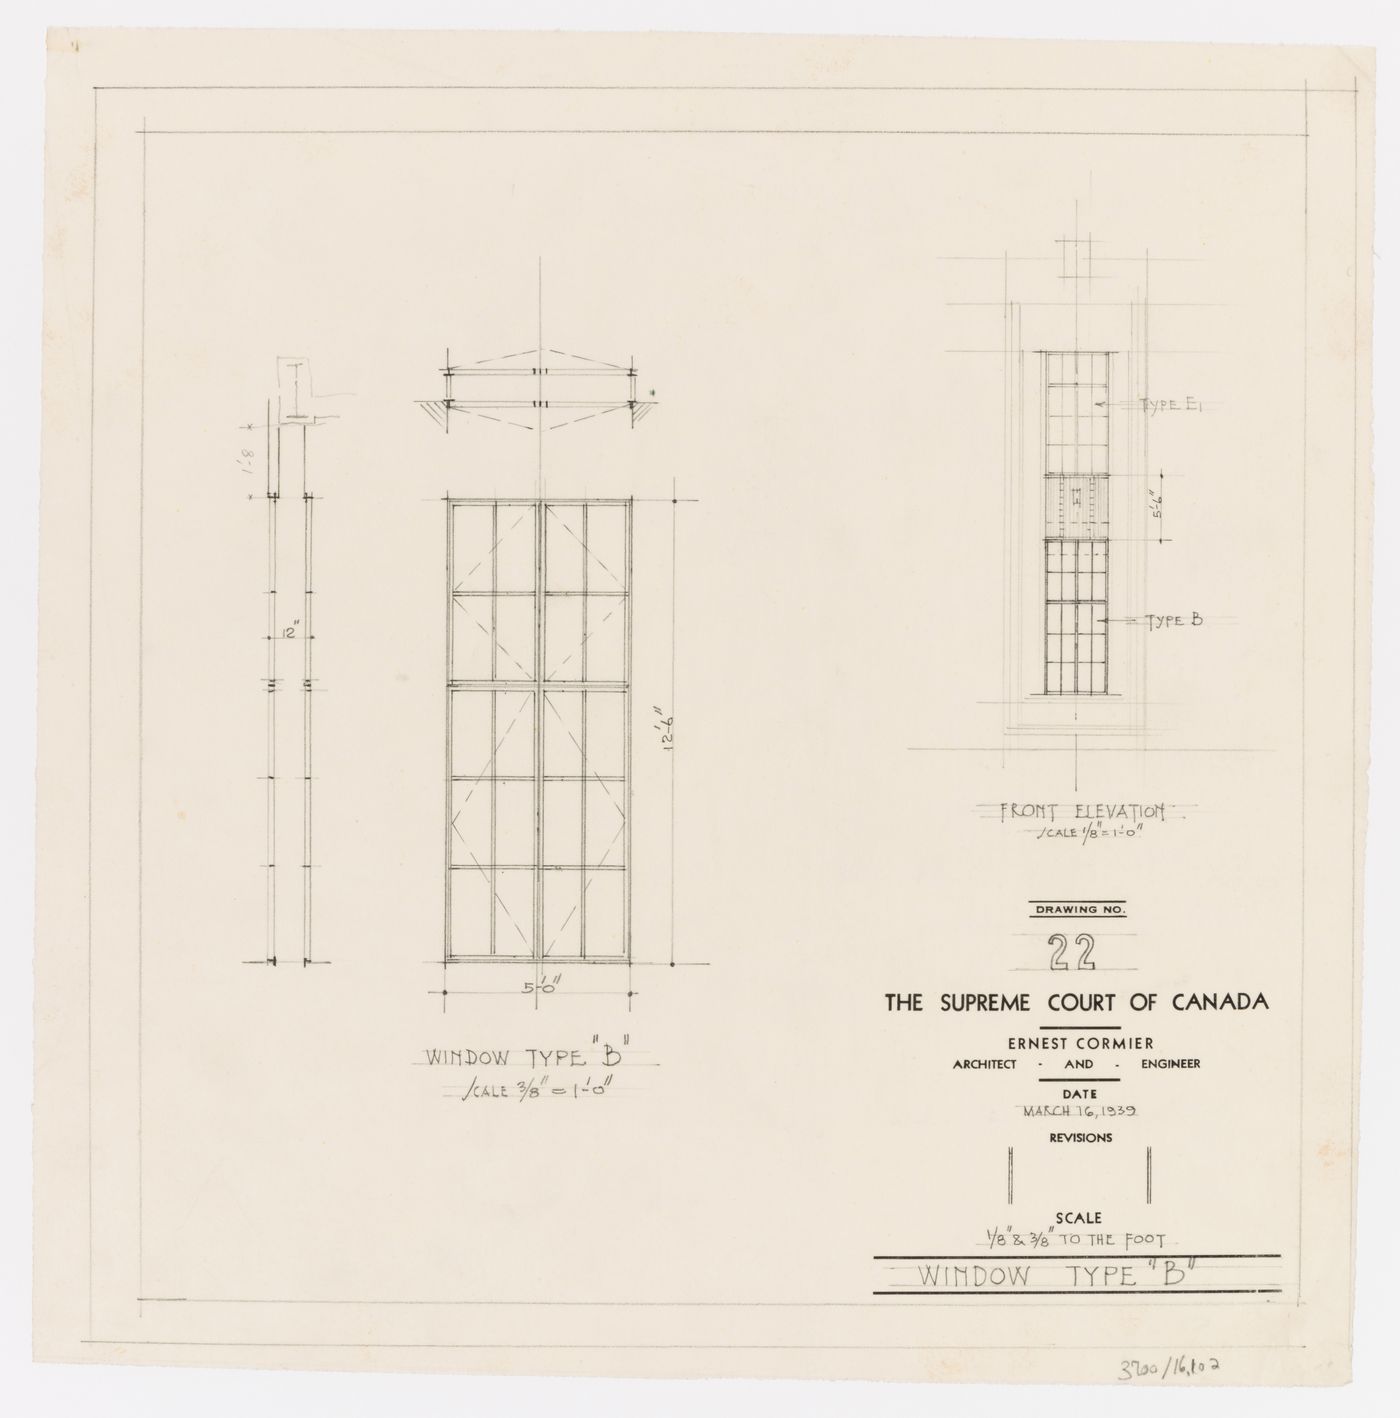 Détails des fenêtres de type B, Cour suprême du Canada, Ottawa, Ontario, Canada (1937-1953, 1977)